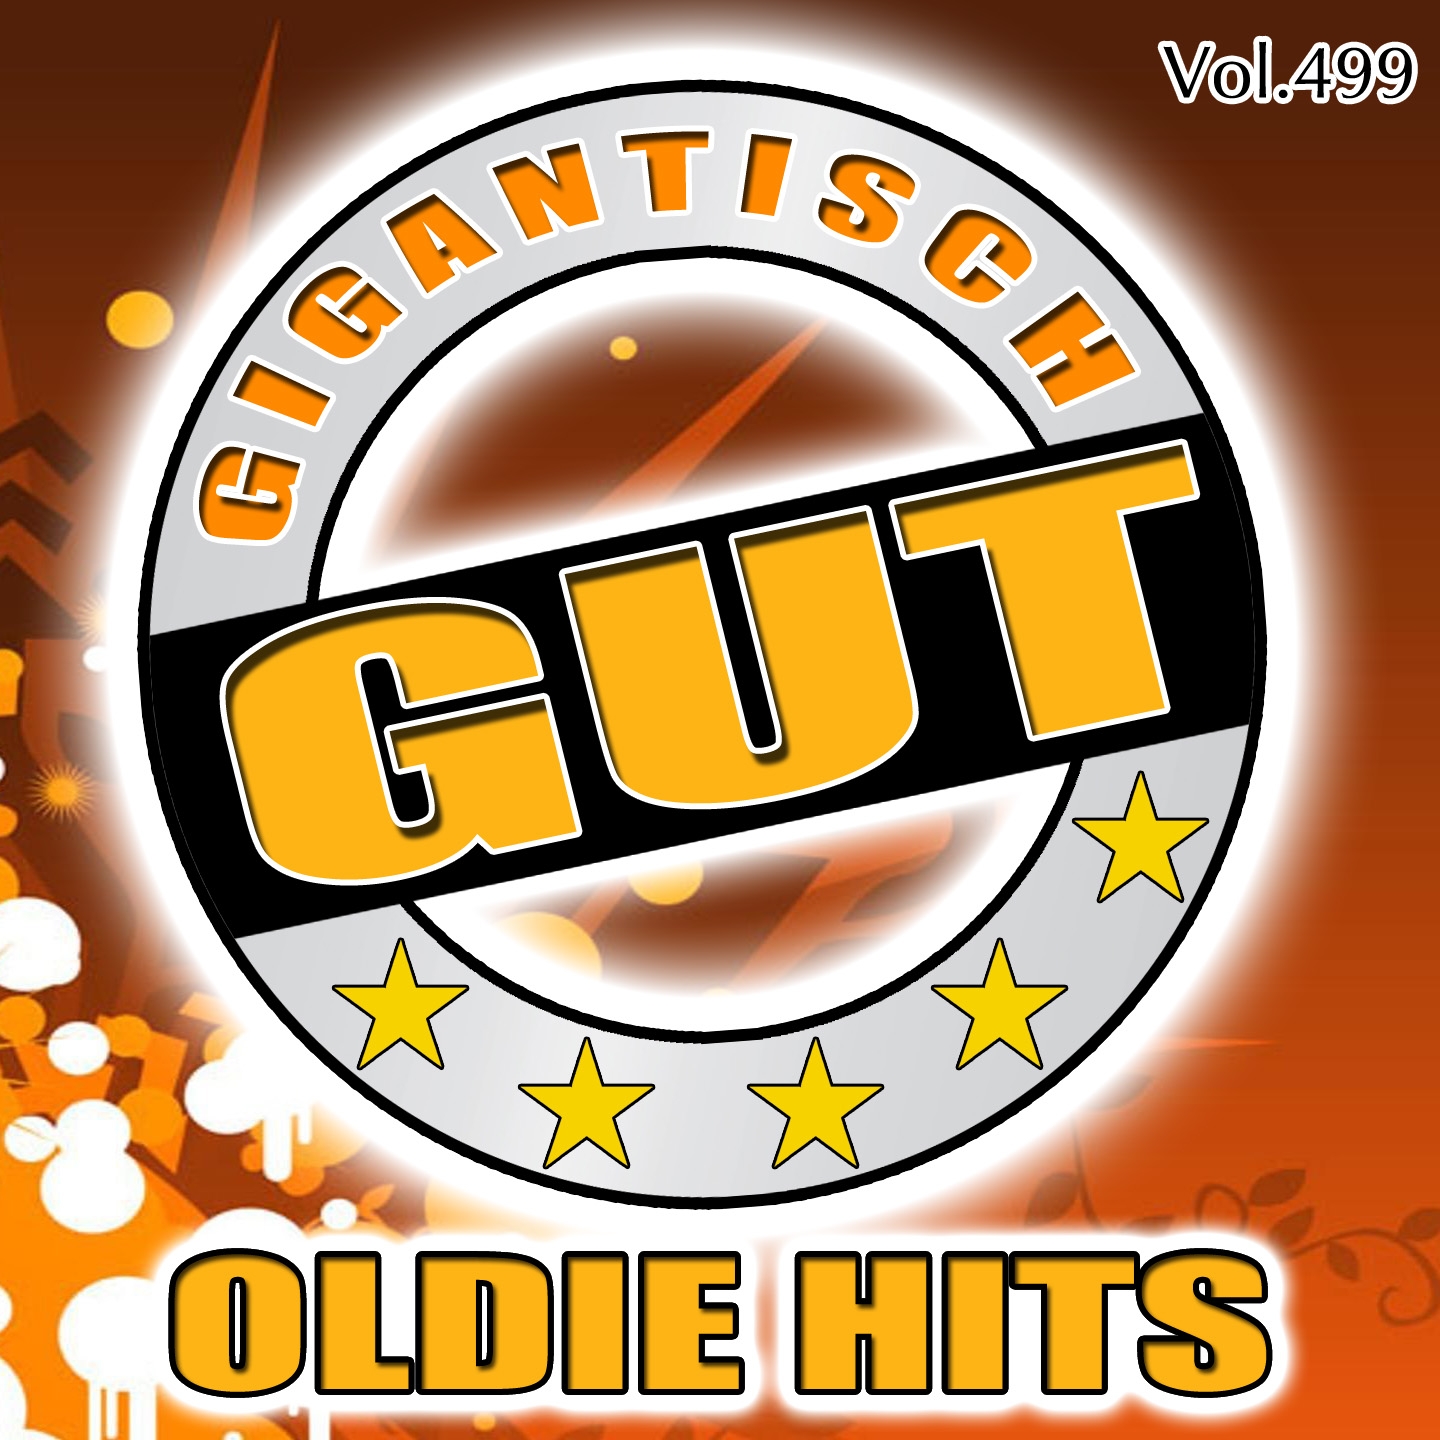 Gigantisch Gut: Oldie Hits, Vol. 499